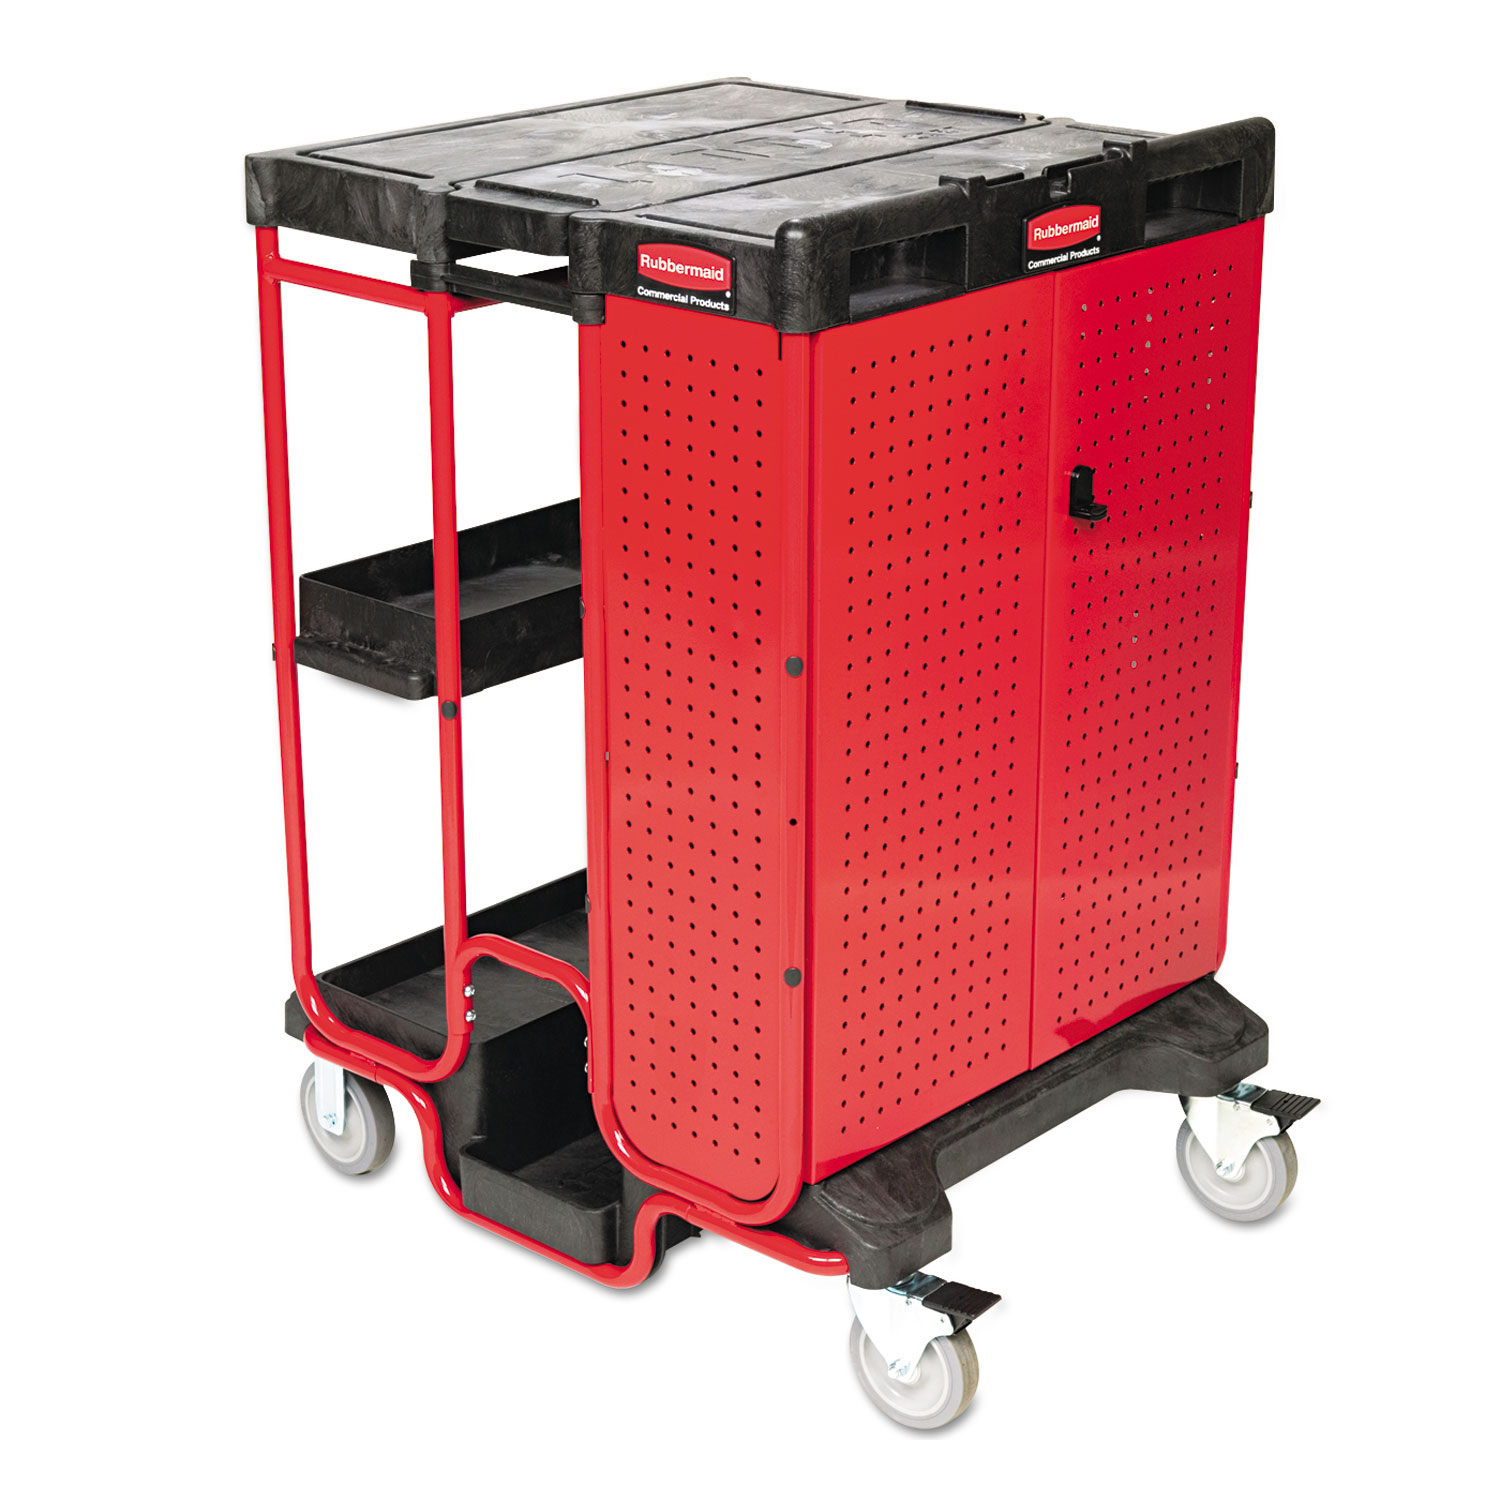 Ladder Cart w/Cabinet, Three-Shelf, 27w x 31-1/2d x 42h, Black/Red